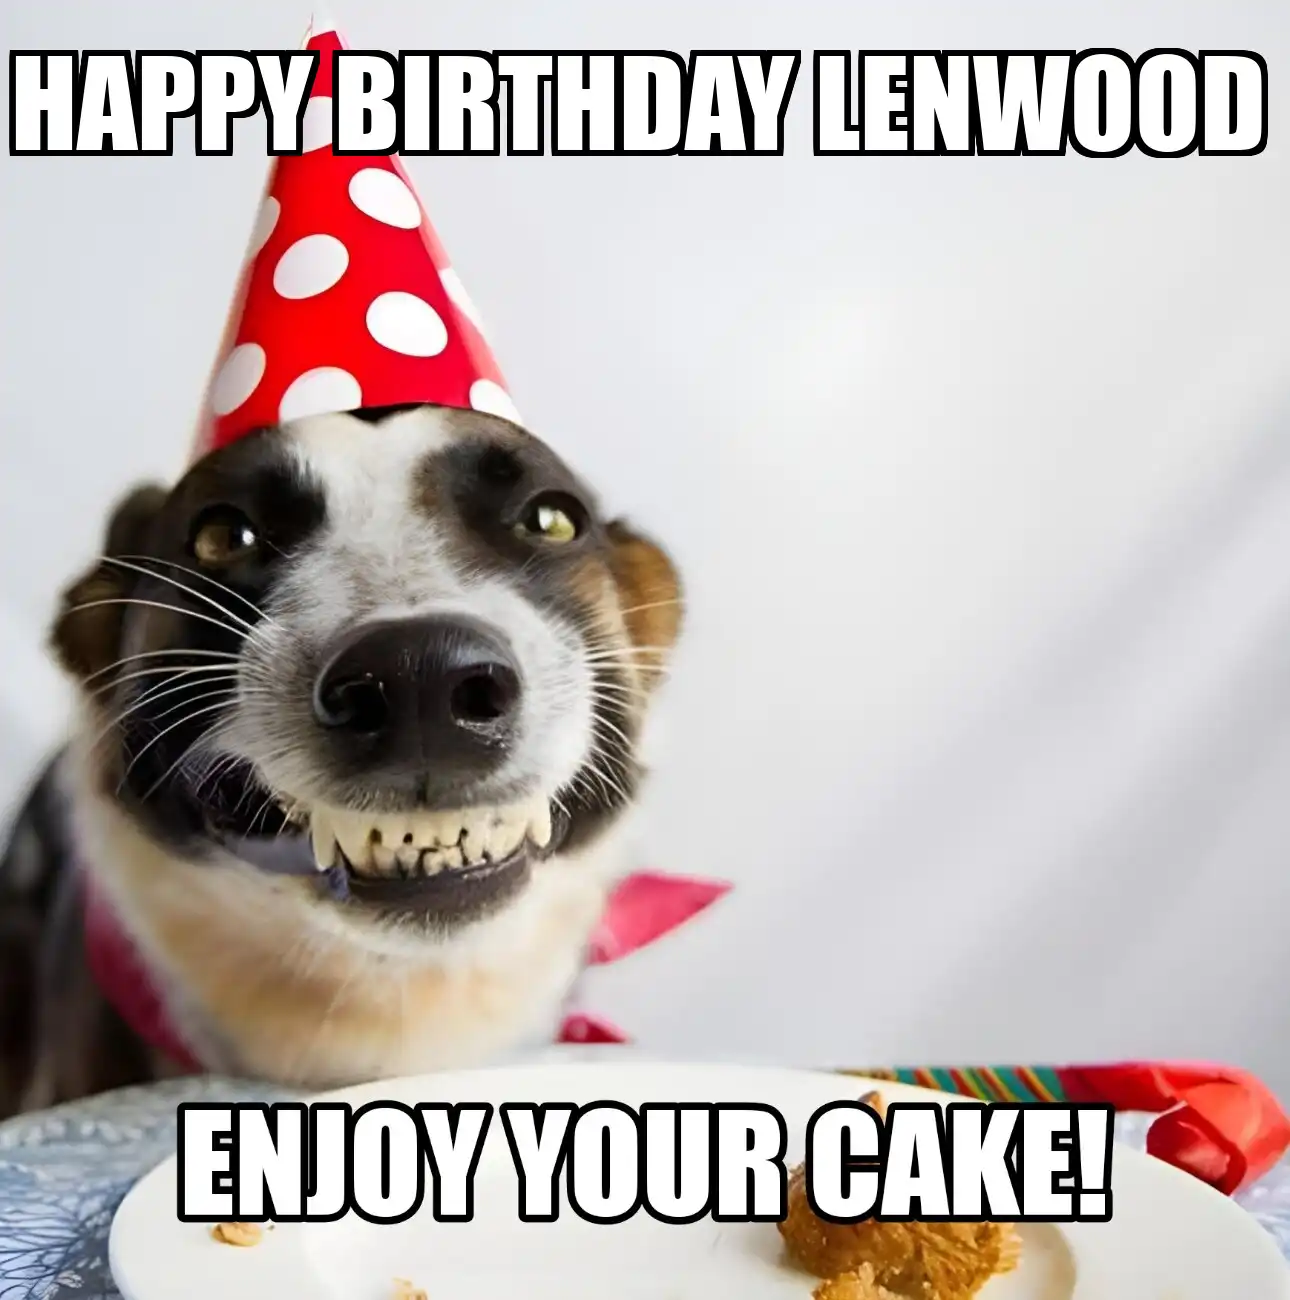 Happy Birthday Lenwood Enjoy Your Cake Dog Meme